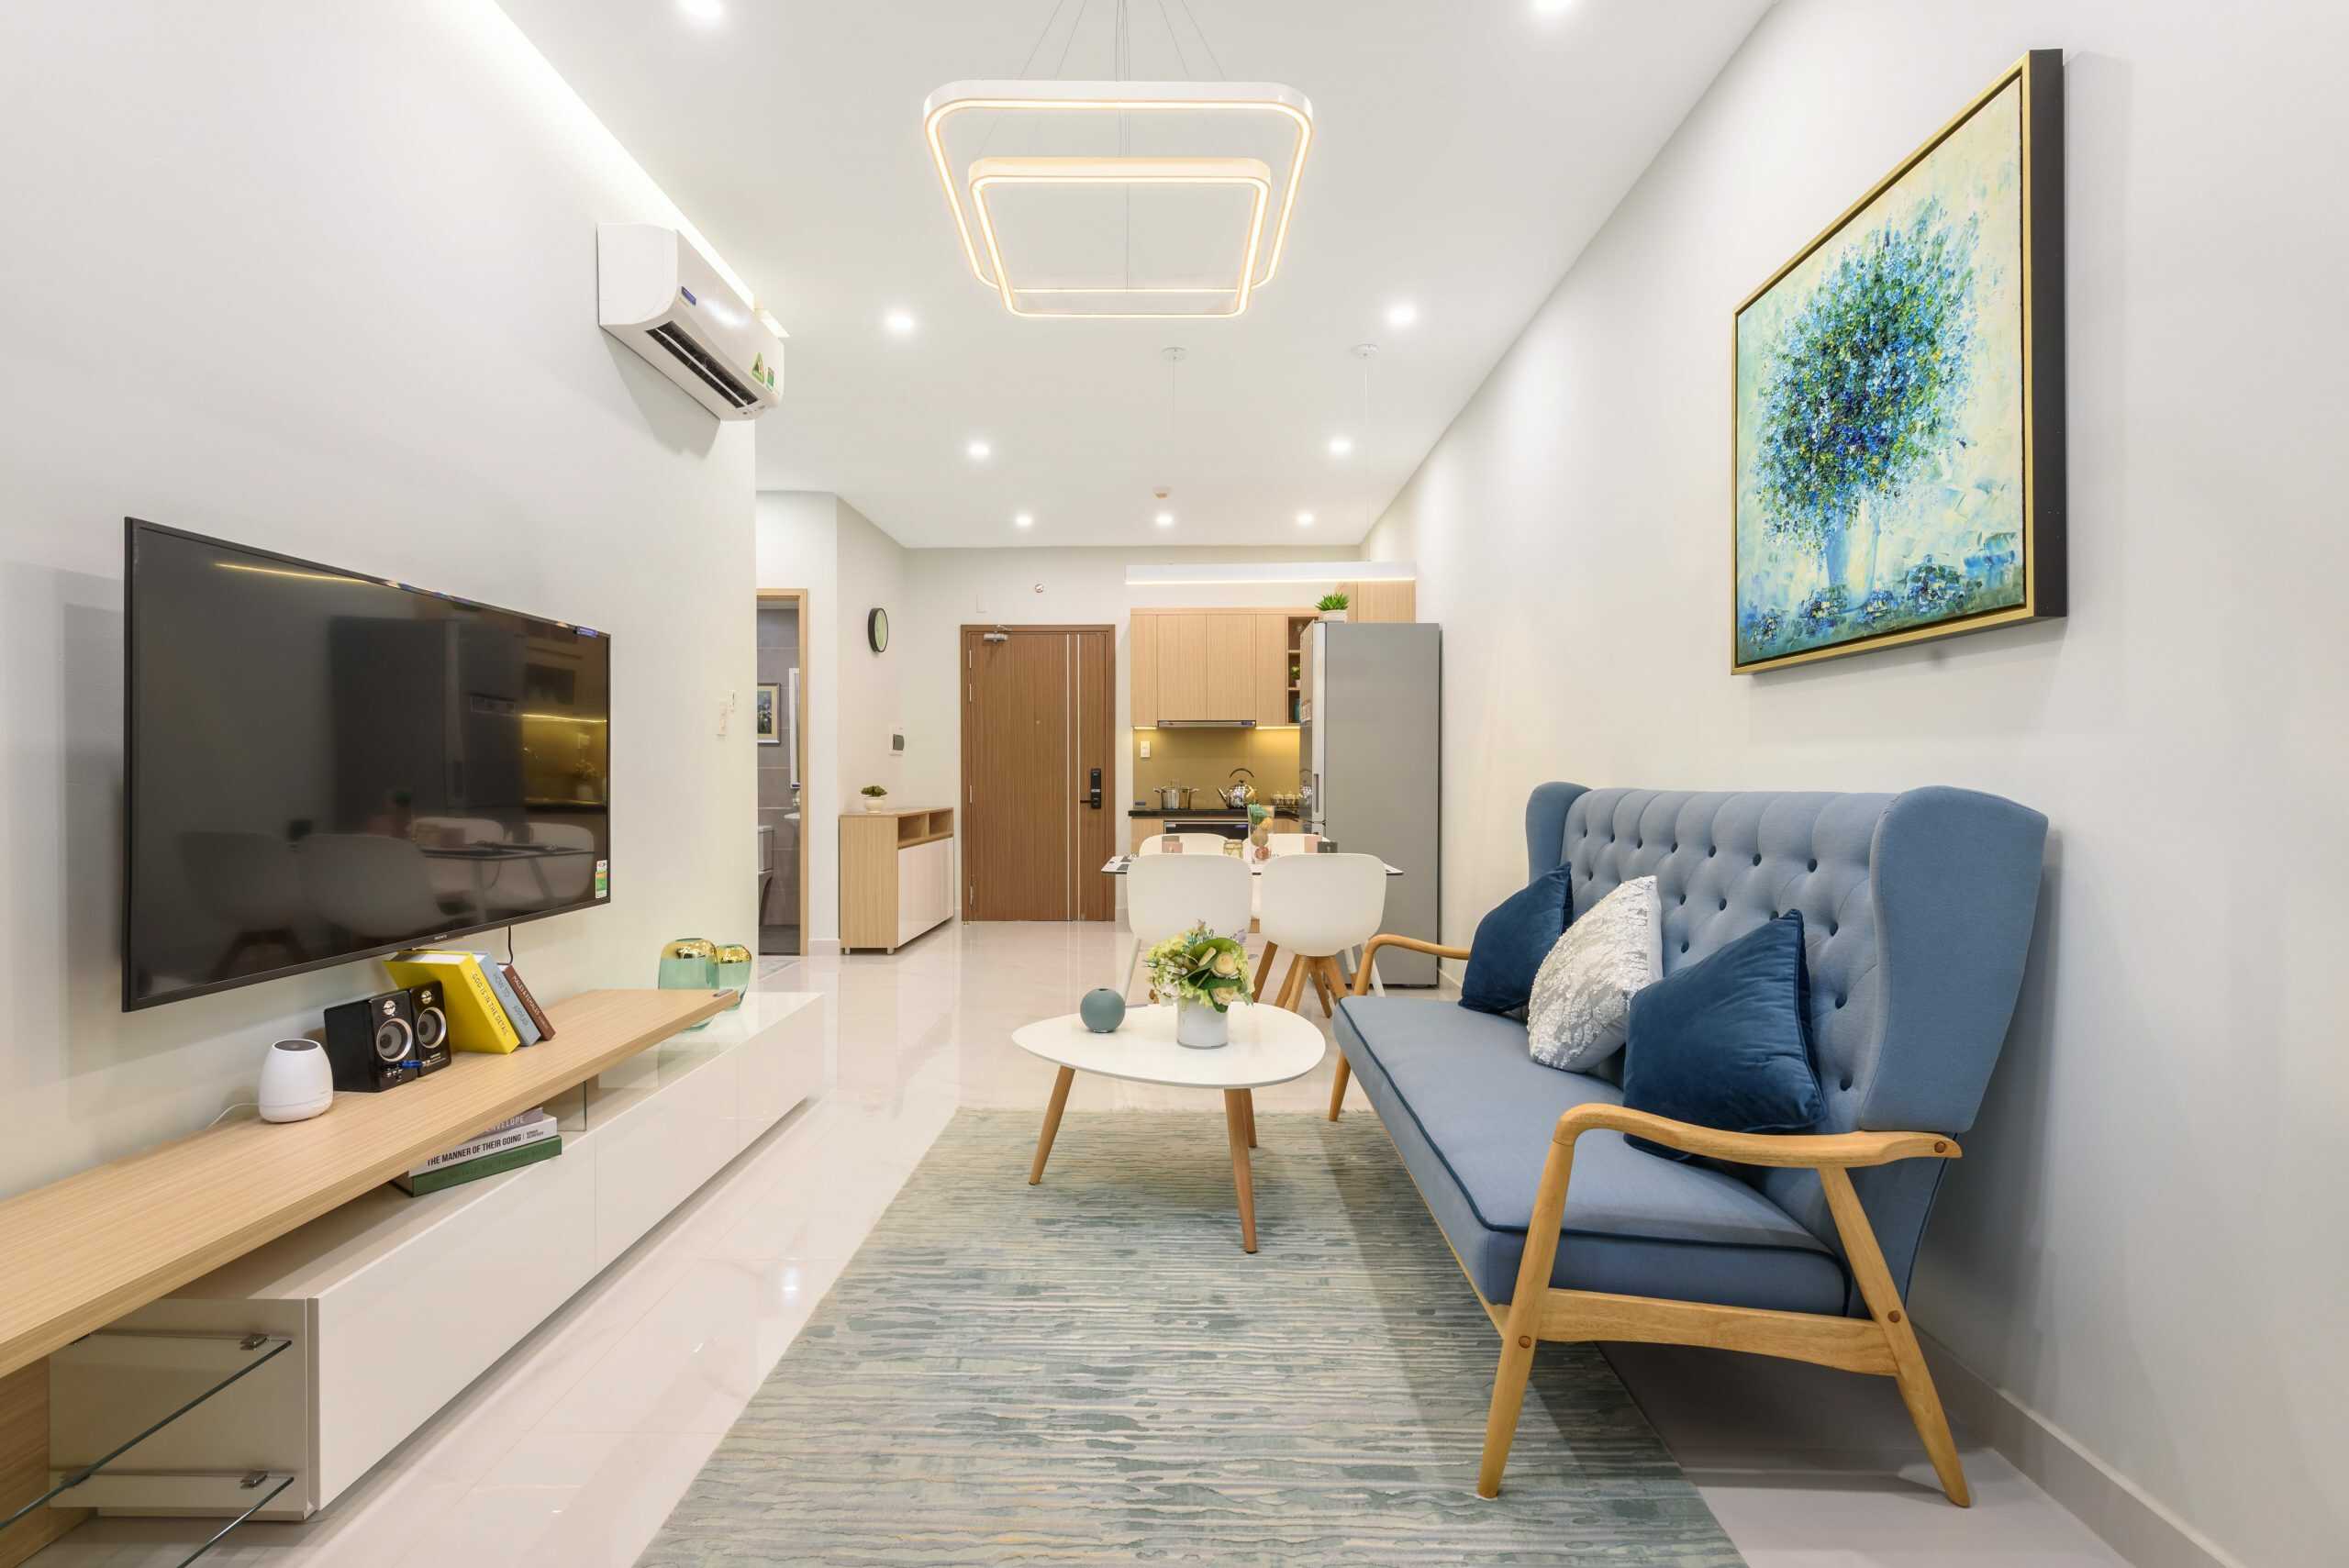 Thiết kế căn hộ chung cư Phú Thịnh Green Park